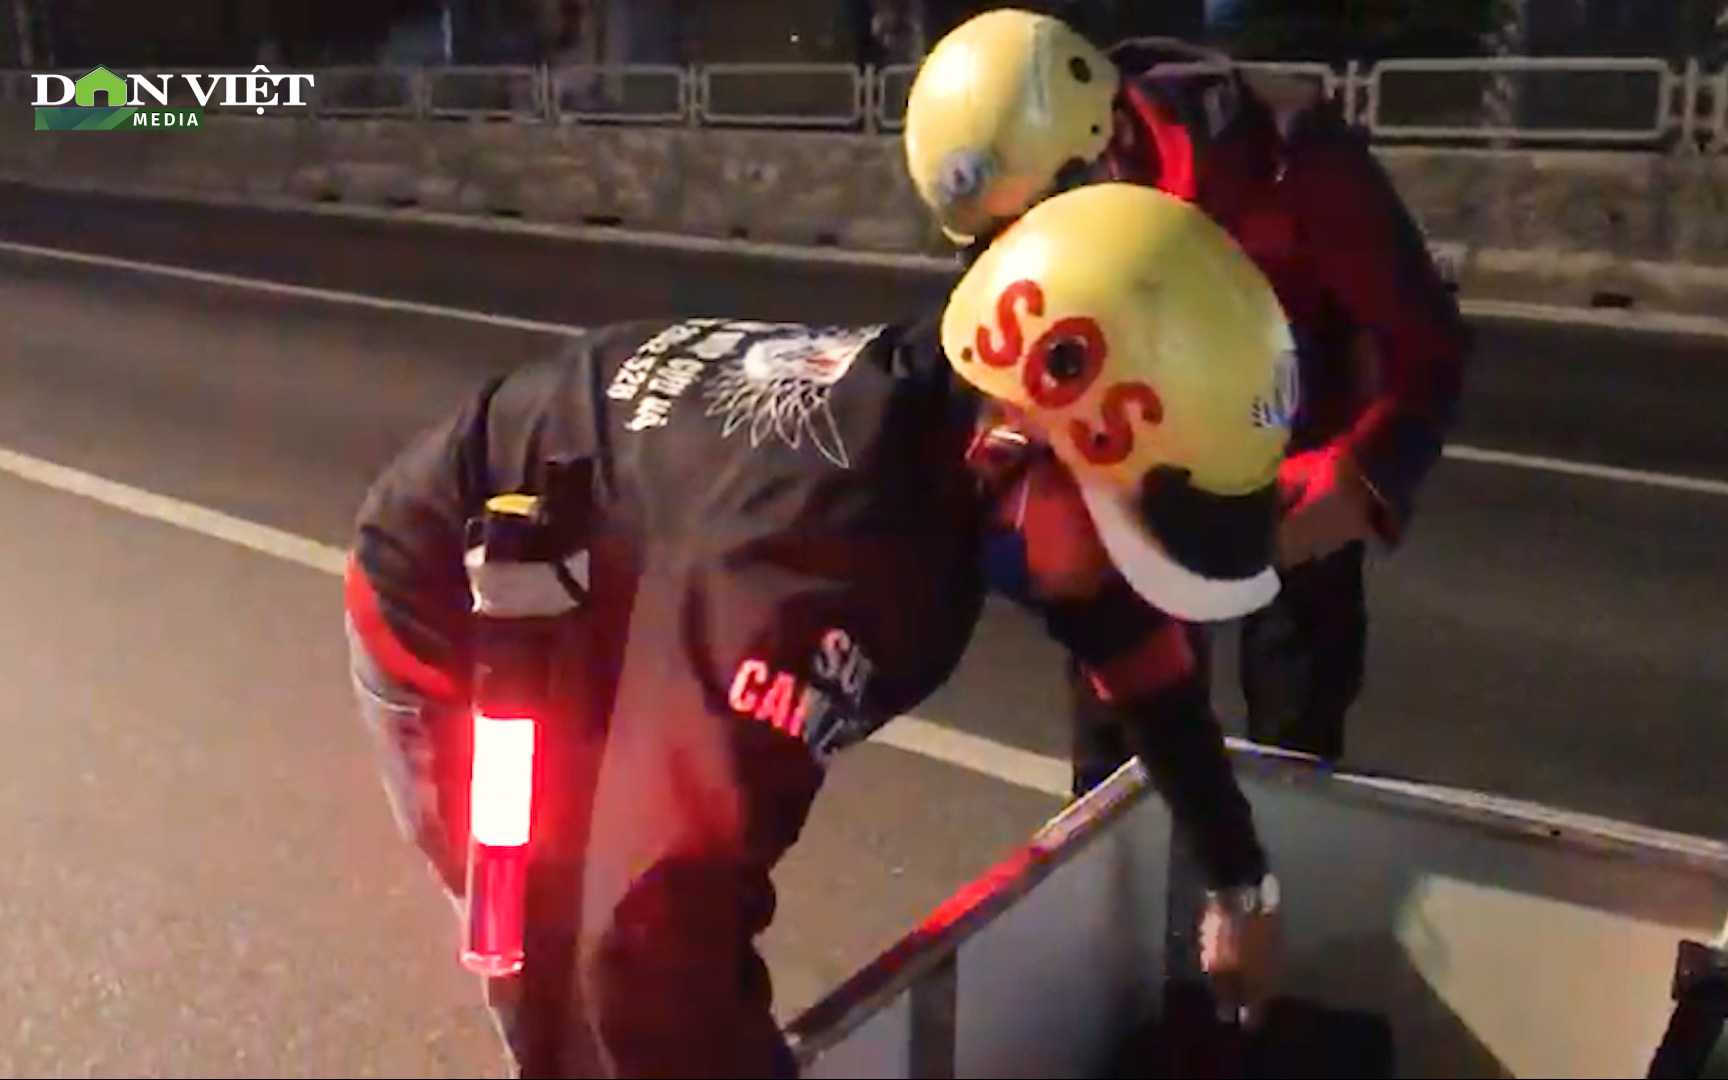 Video: Biệt đội thanh niên chuyên giúp người gặp nạn vào ban đêm ở Khánh Hòa